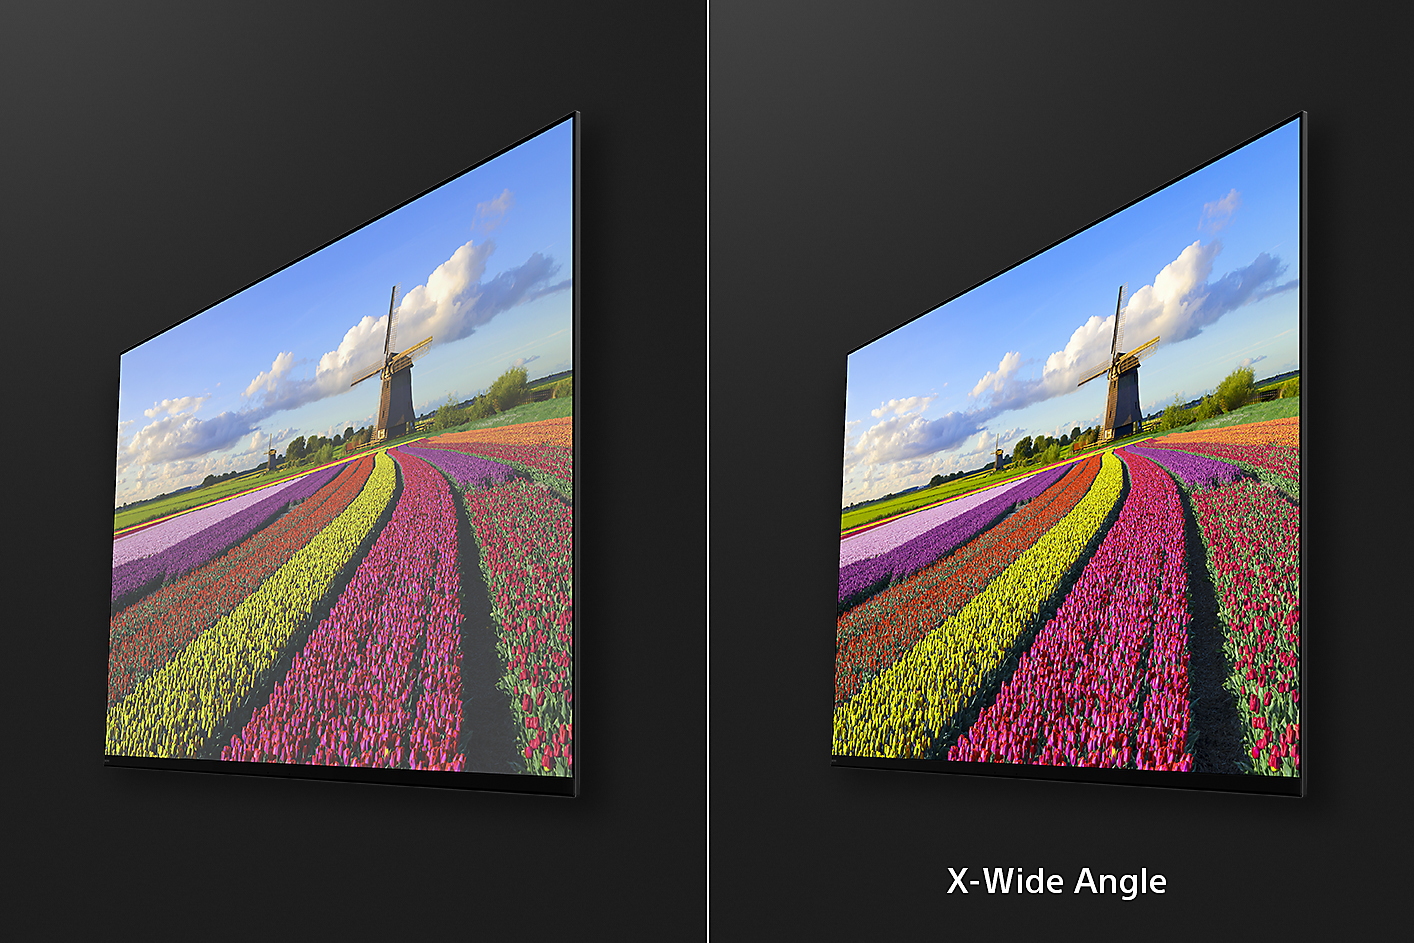 Due immagini di fiori in un campo da una prospettiva angolare, con l'immagine destra che mostra i vantaggi di X-Wide Angle